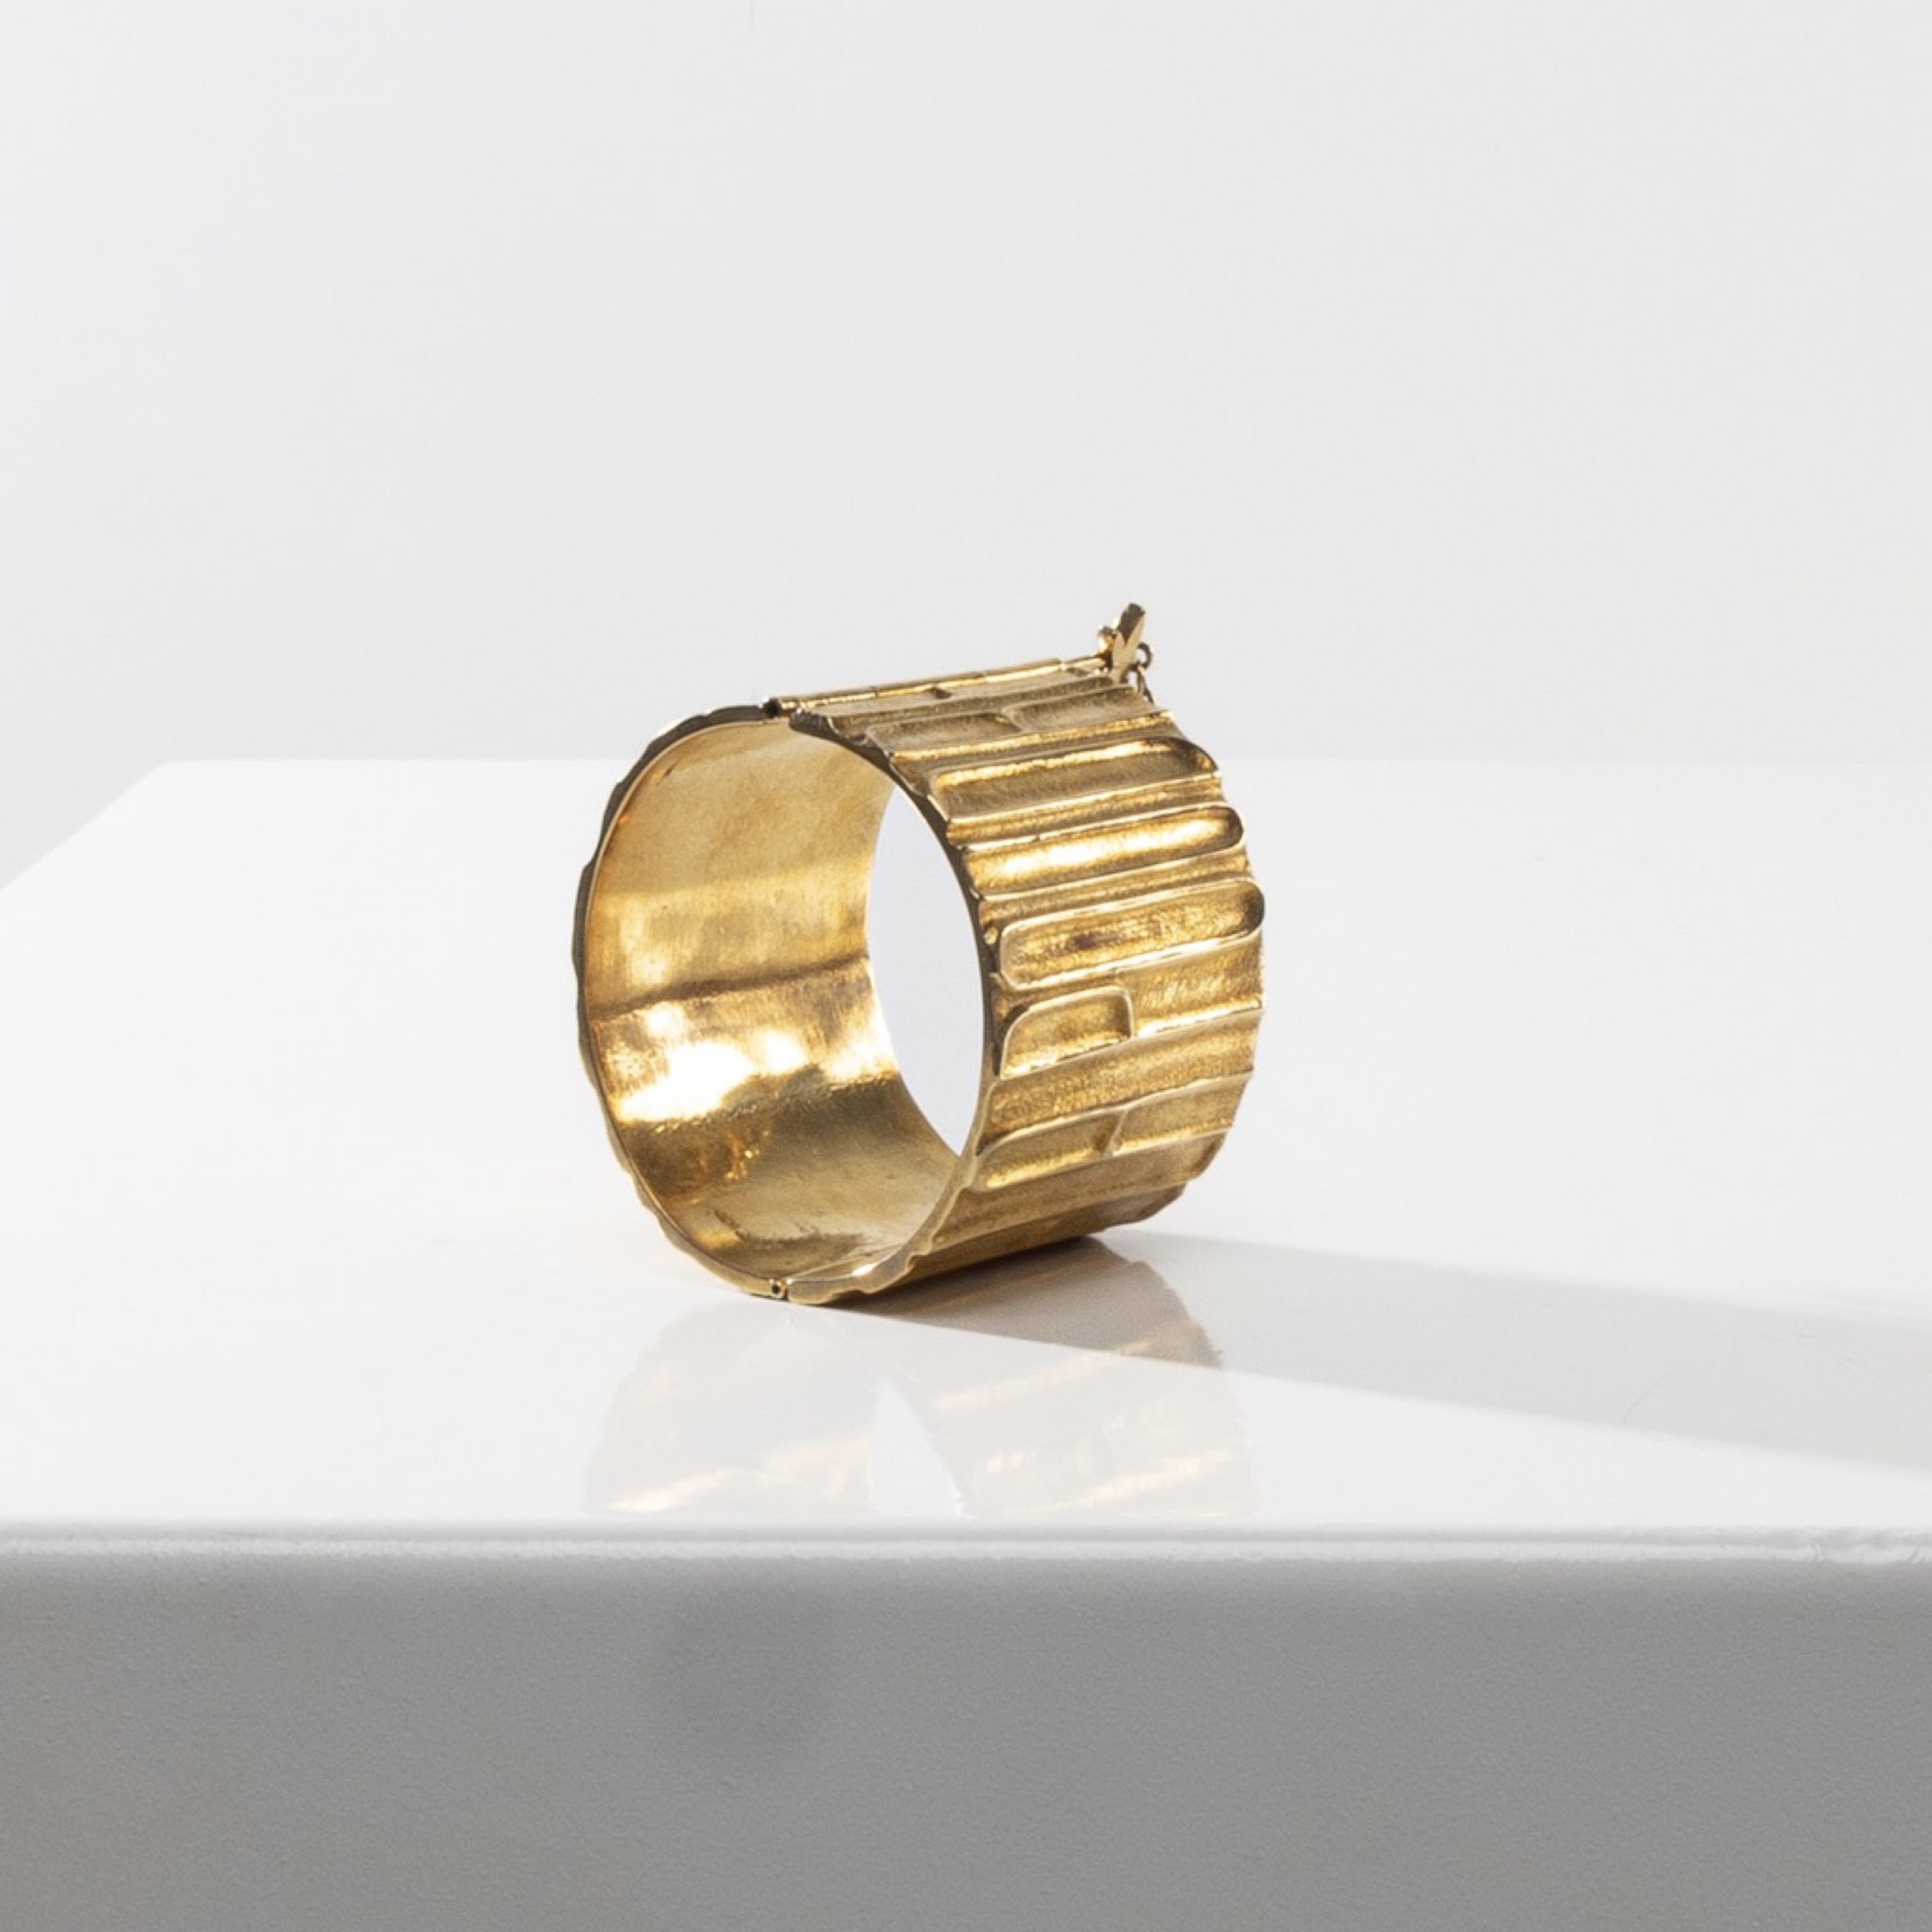 De la poudre et des bals by Line Vautrin - Gilt bronze armband - 07